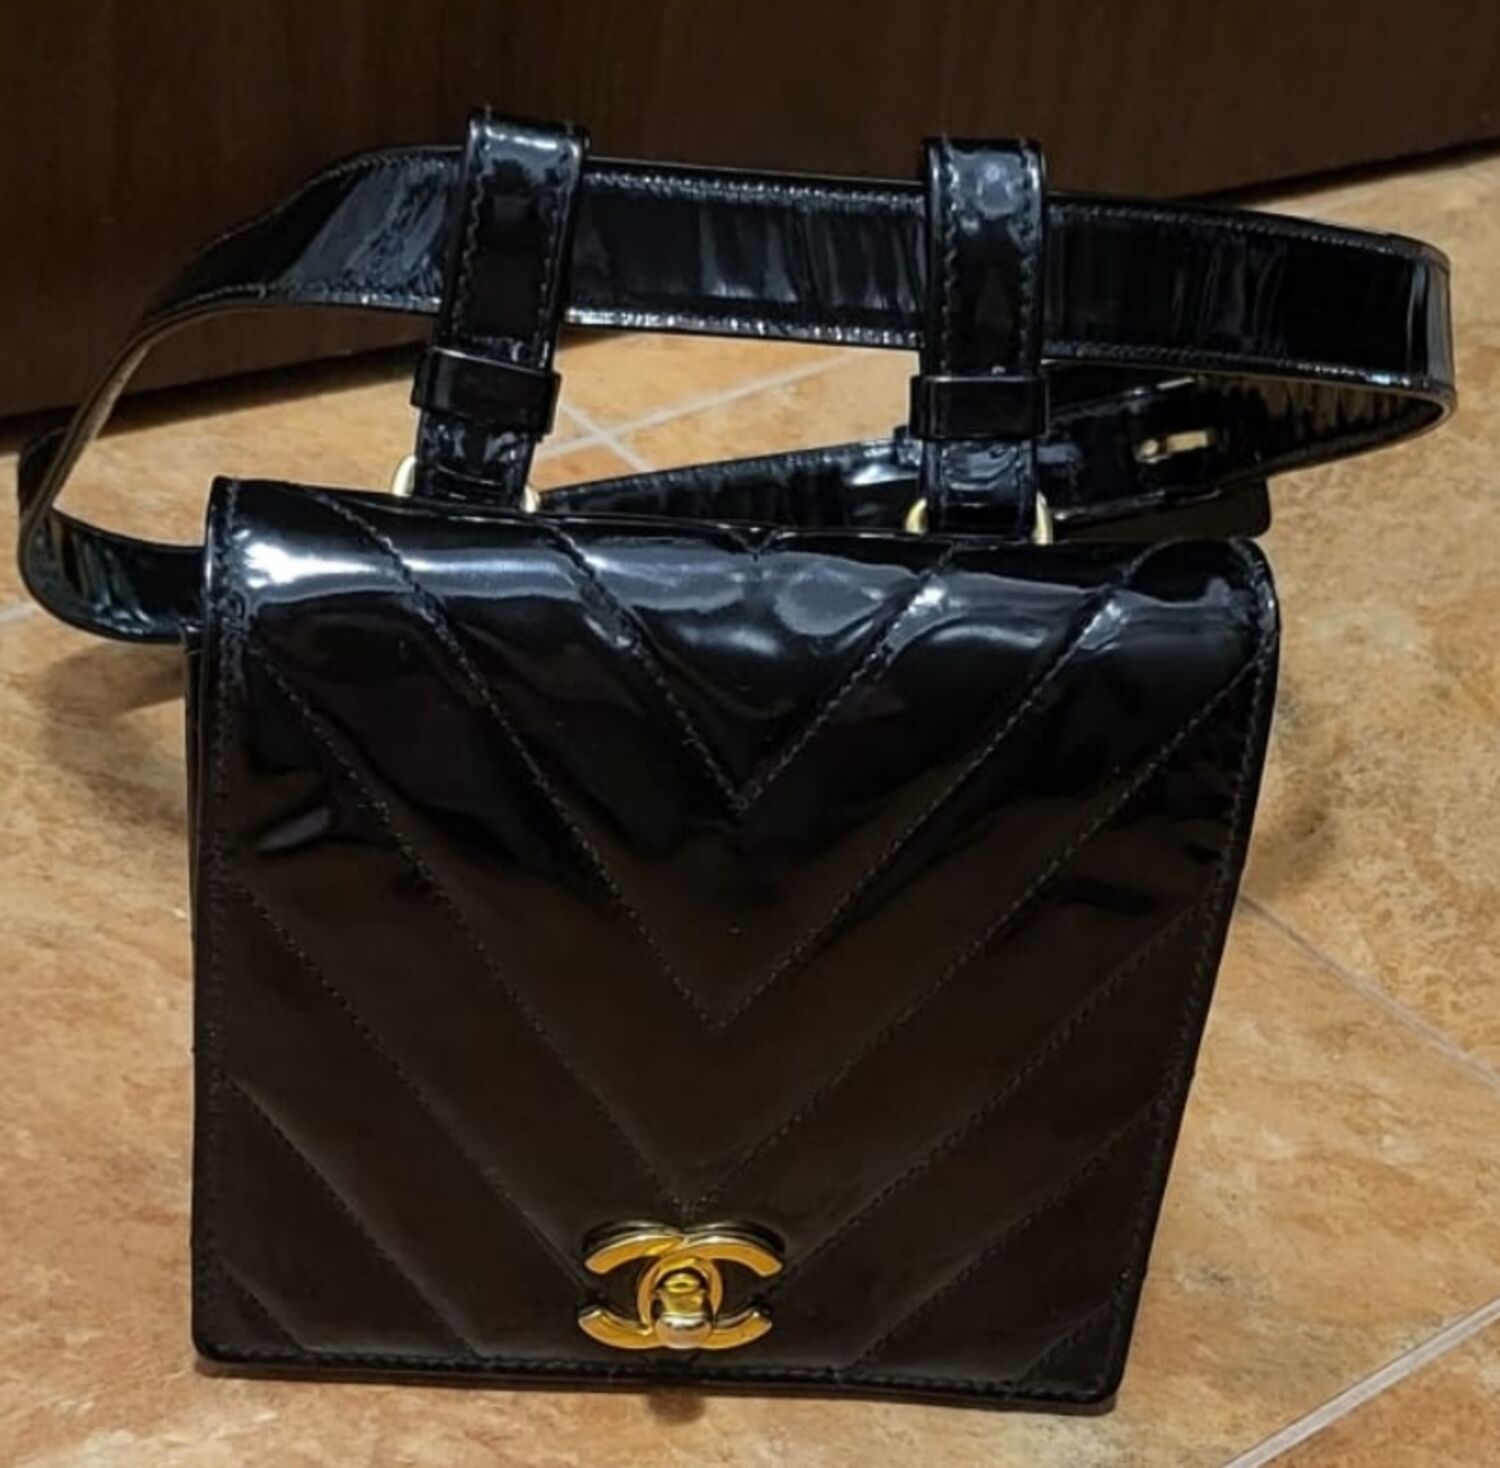 Vintage flap belt bag Chanel - One size, buy pre-owned at 1300 EUR